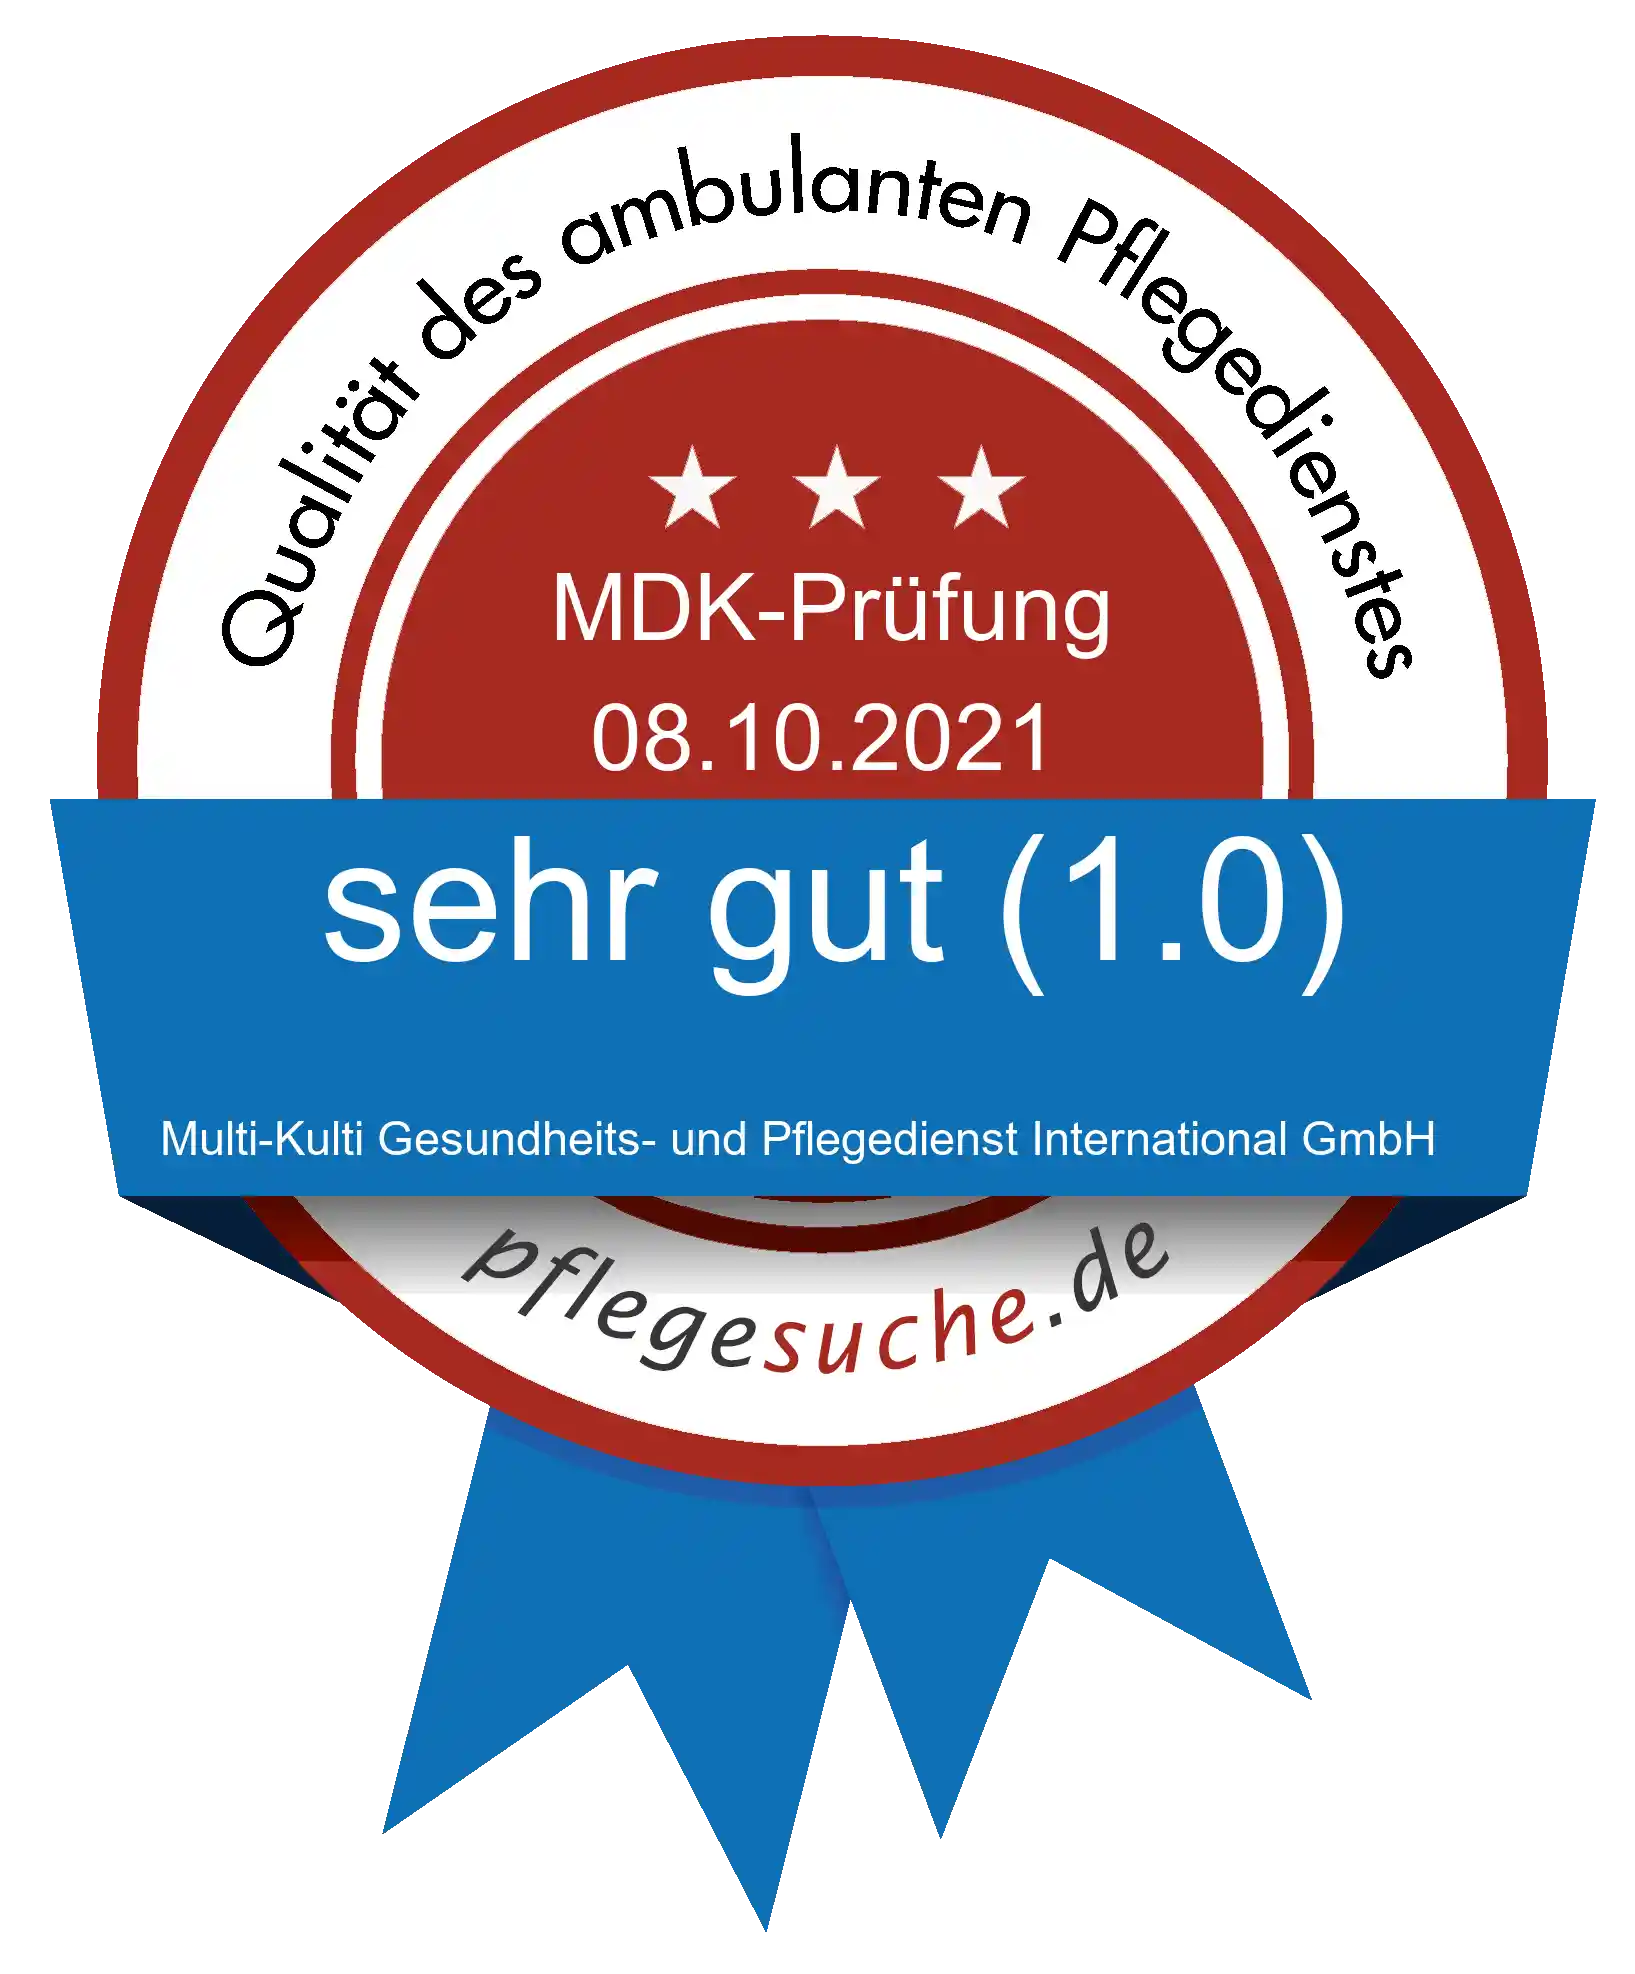 Siegel Benotung: Multi-Kulti Gesundheits- und Pflegedienst International GmbH